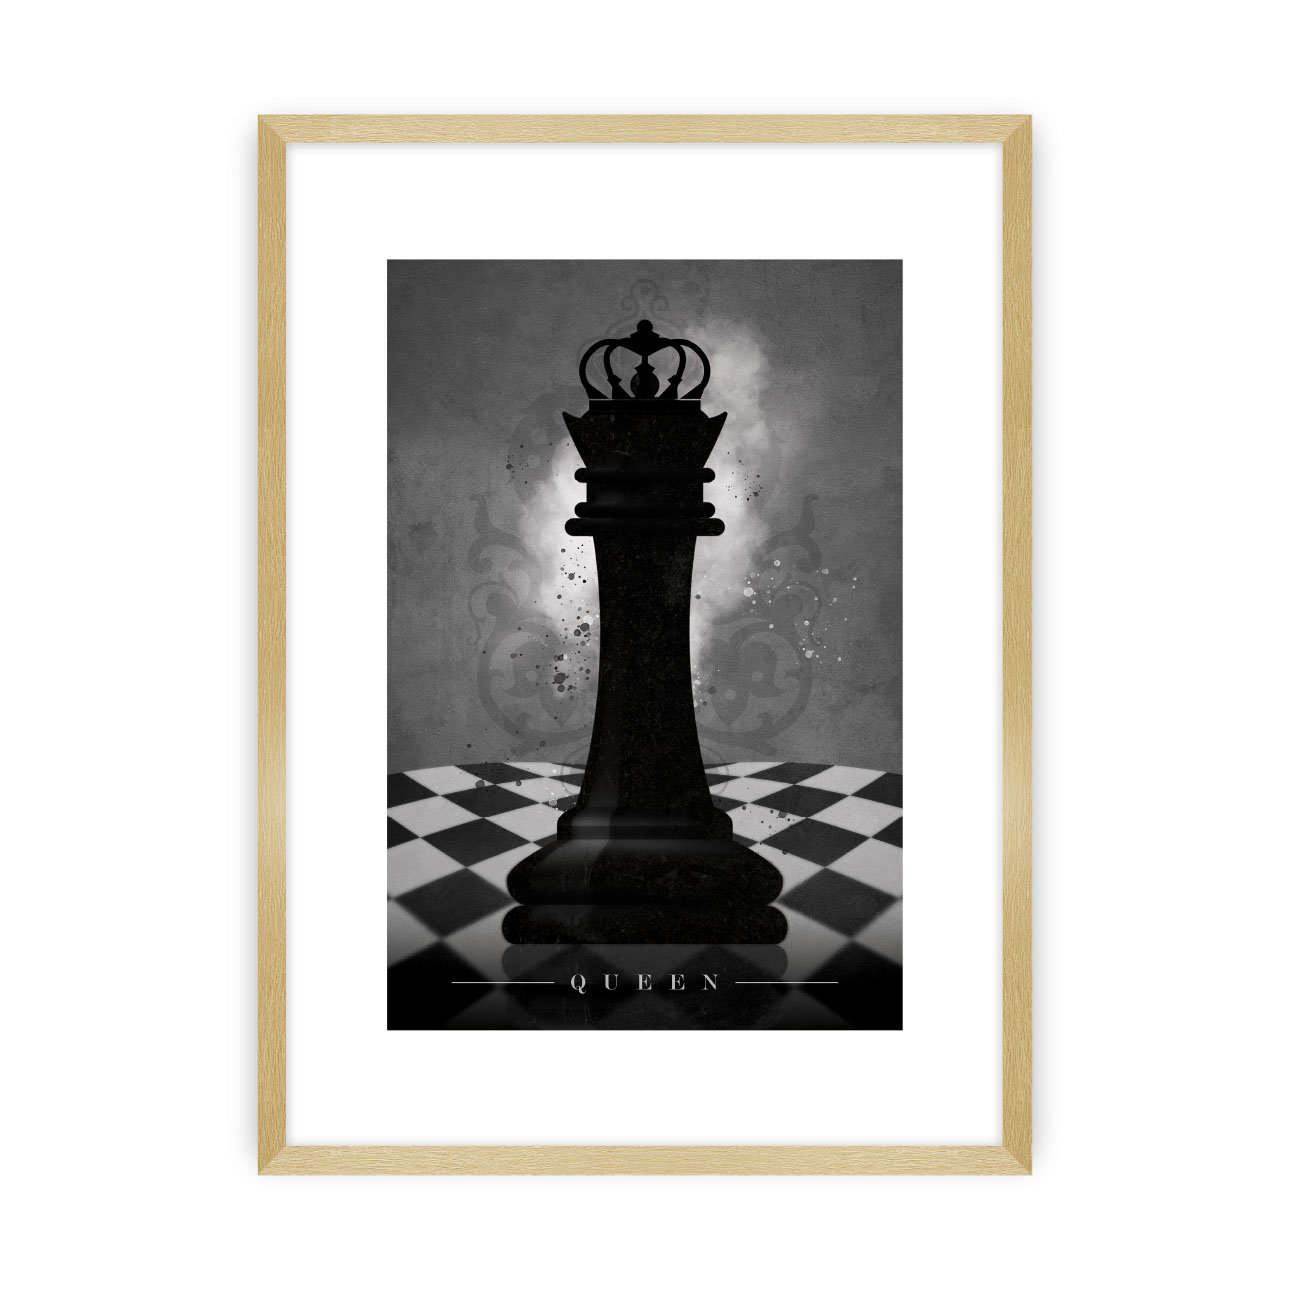 Dekoria Plakát Chess II, 40 x 50 cm, Ramka: Złota